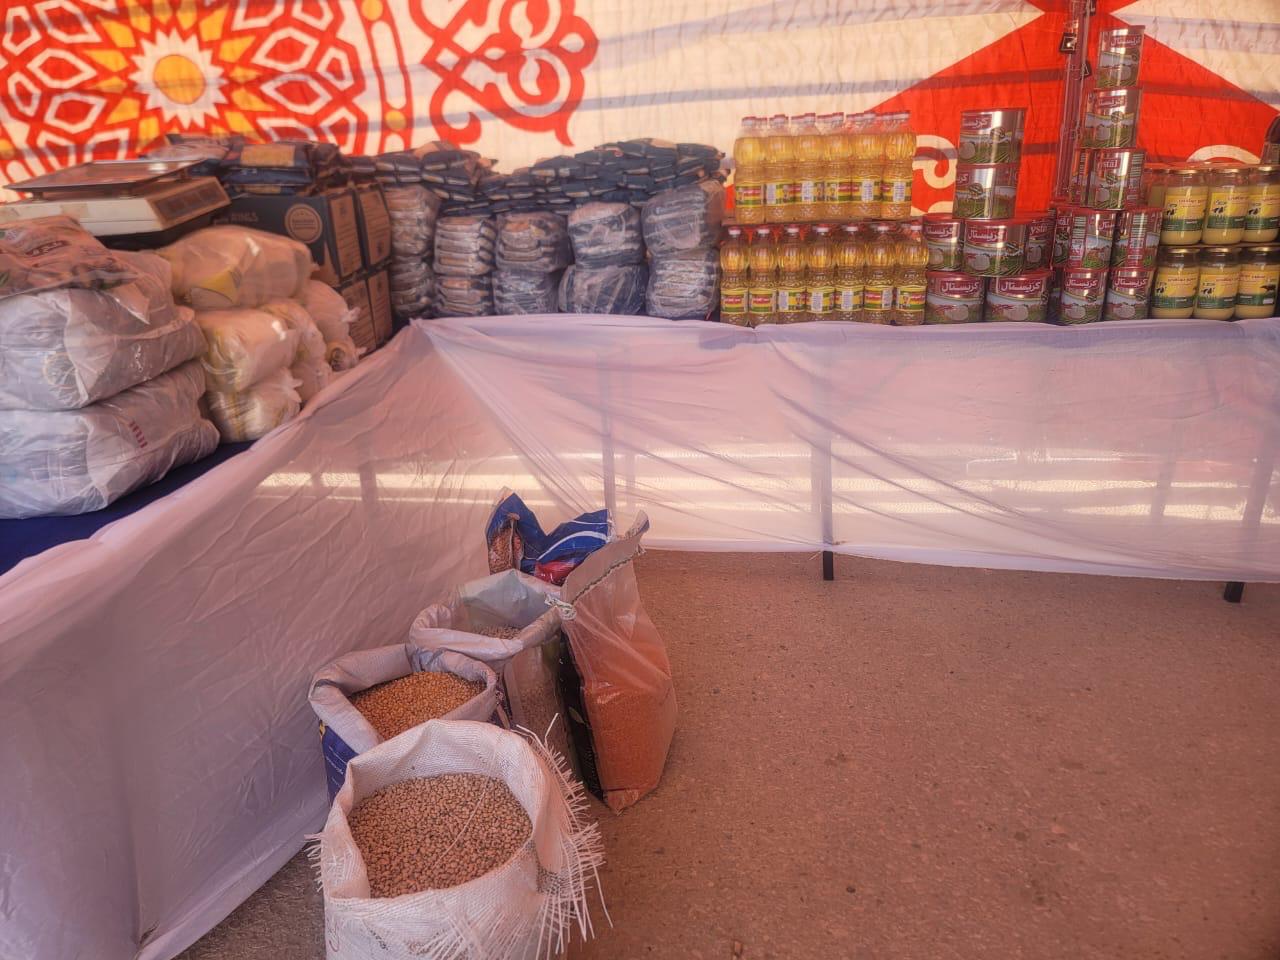 "الزراعة" تشارك بمنتجاتها في معارض جنوب سيناء للسلع الغذائية بأسعار مخفضة 5